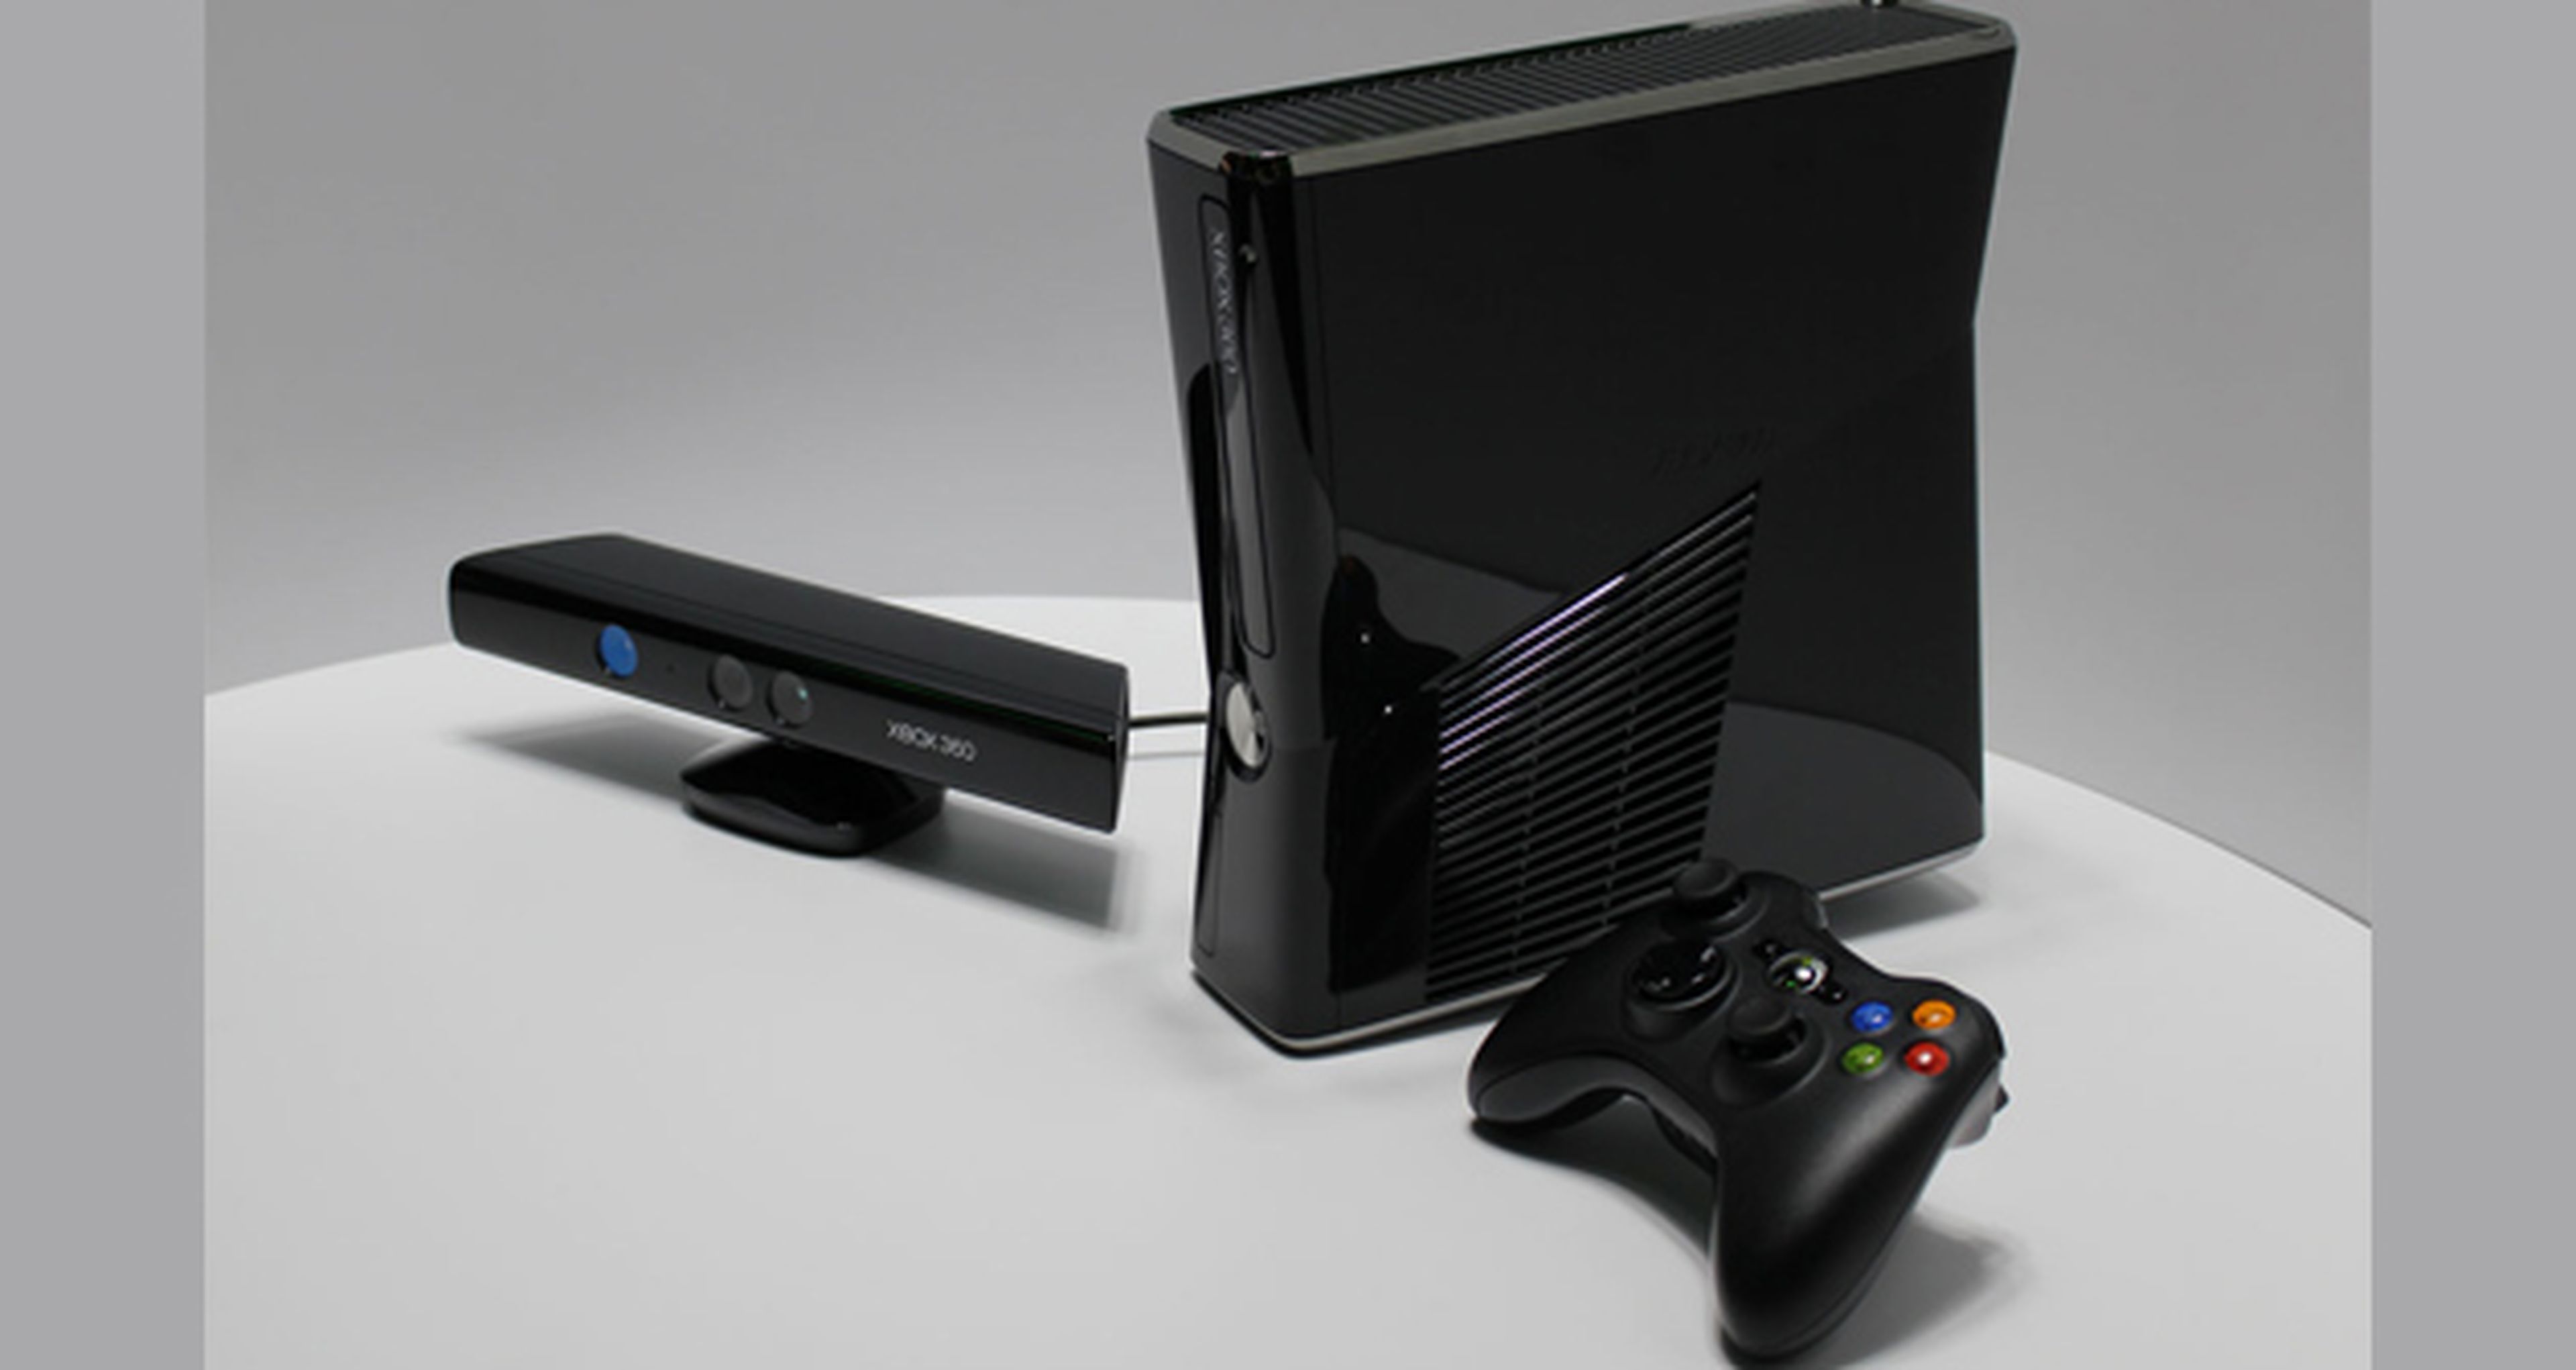 Microsoft anuncia un disco duro de 500GB para Xbox 360